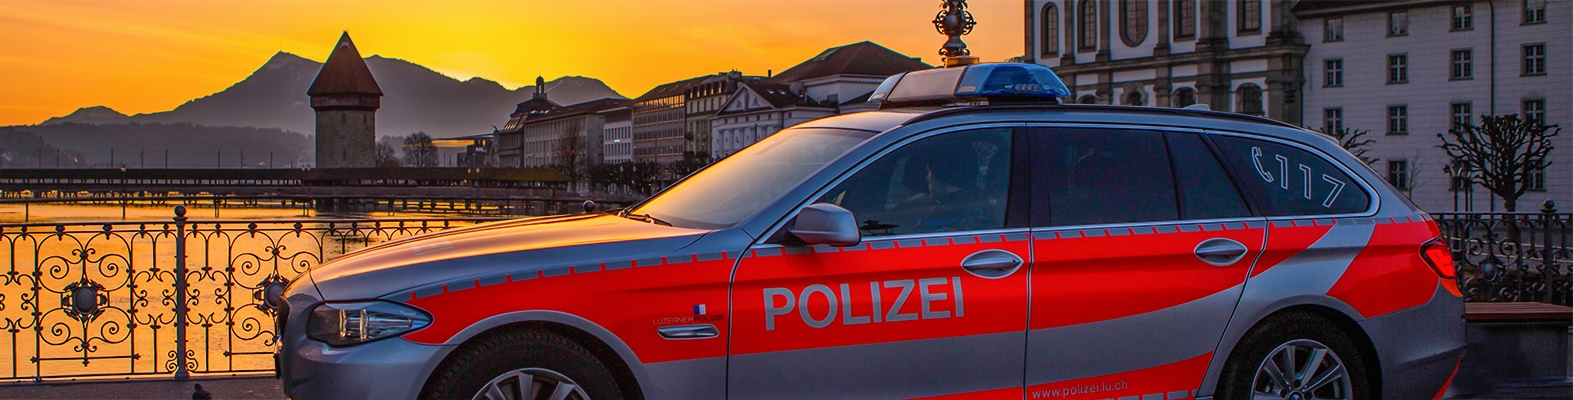 Stadt Luzern: Zwei Polizisten bei Einsätzen verletzt